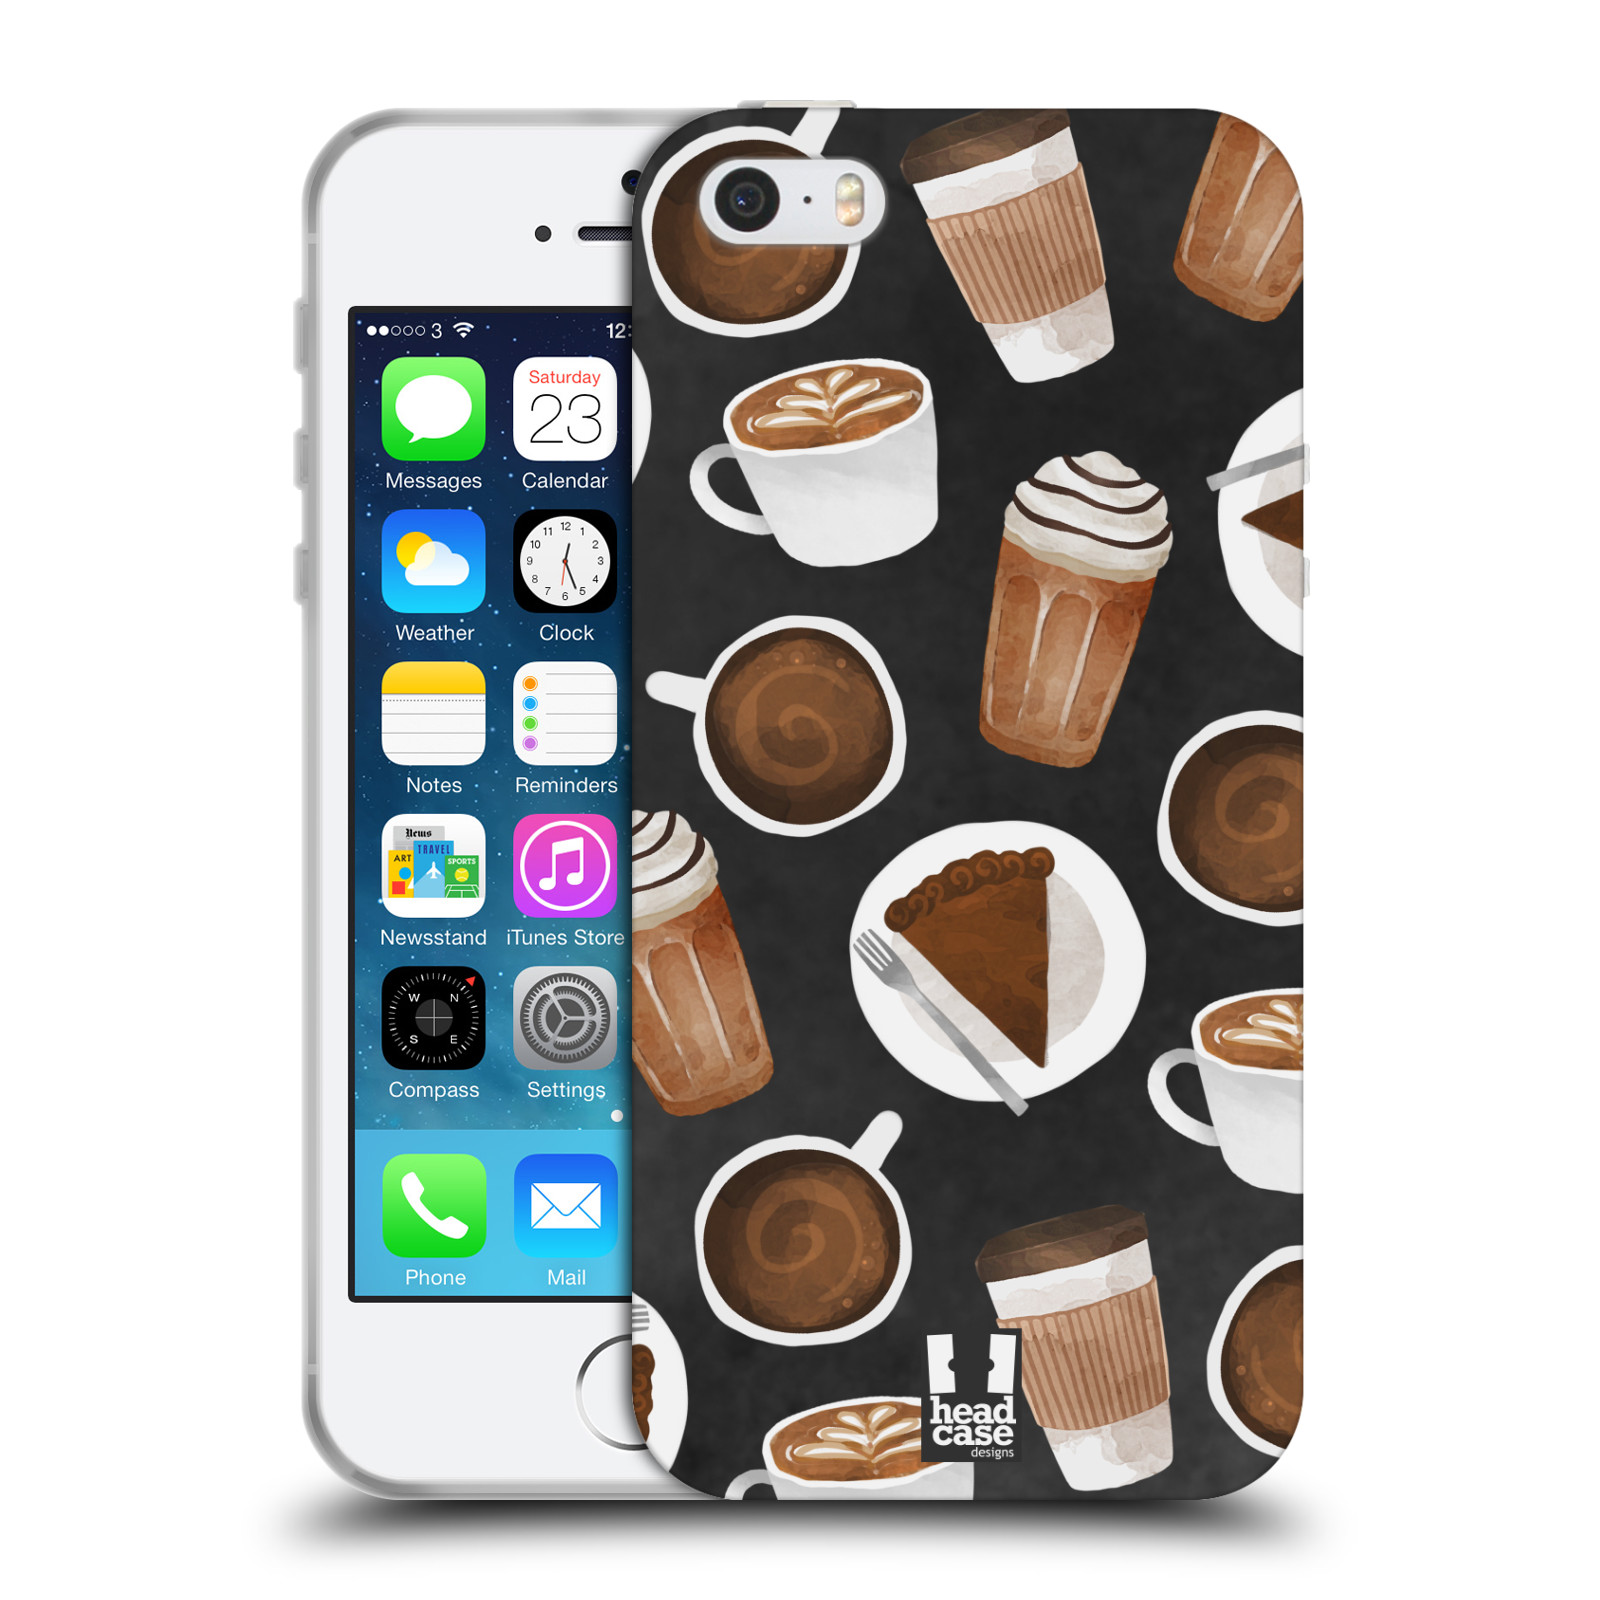 Silikonové pouzdro na mobil Apple iPhone 5, 5S, SE - Head Case - Kafíčka a dortík (Silikonový kryt, obal, pouzdro na mobilní telefon Apple iPhone SE, 5S a 5 s motivem Kafíčka a dortík)